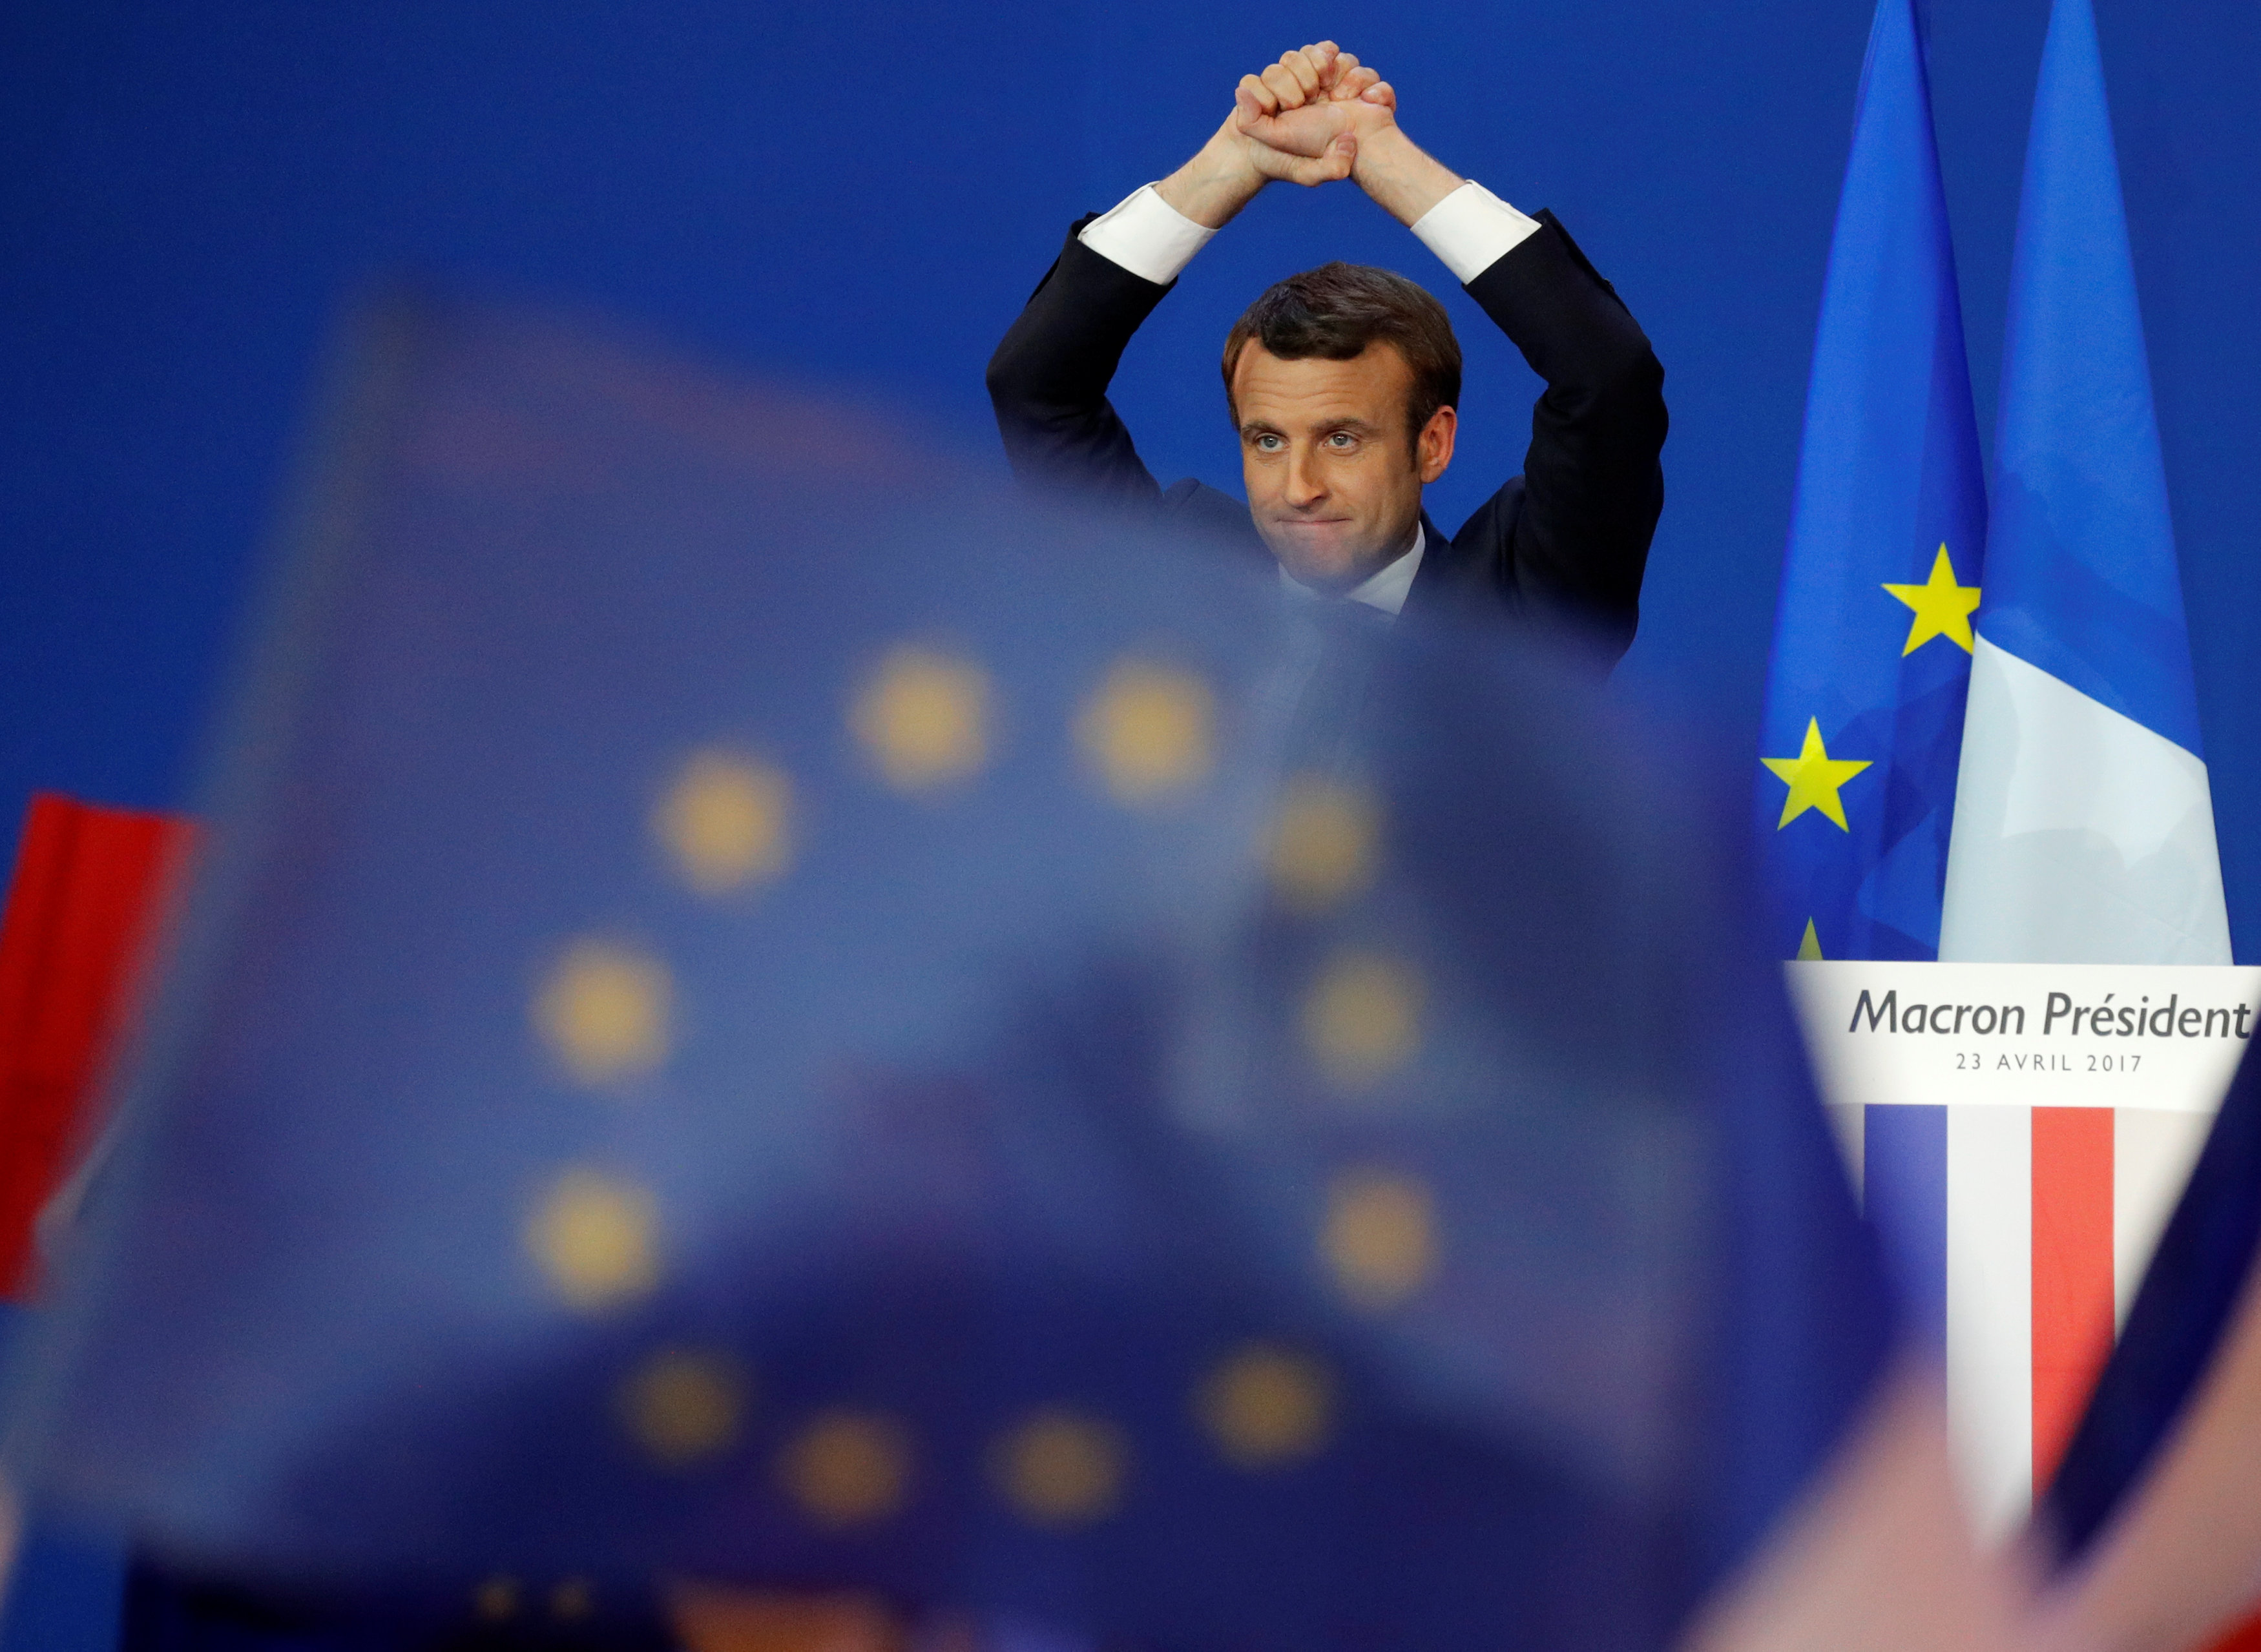 Macron, exministro de Economía de Hollande, ha hecho campaña con un programa abiertamente proeuropeo y liberal.